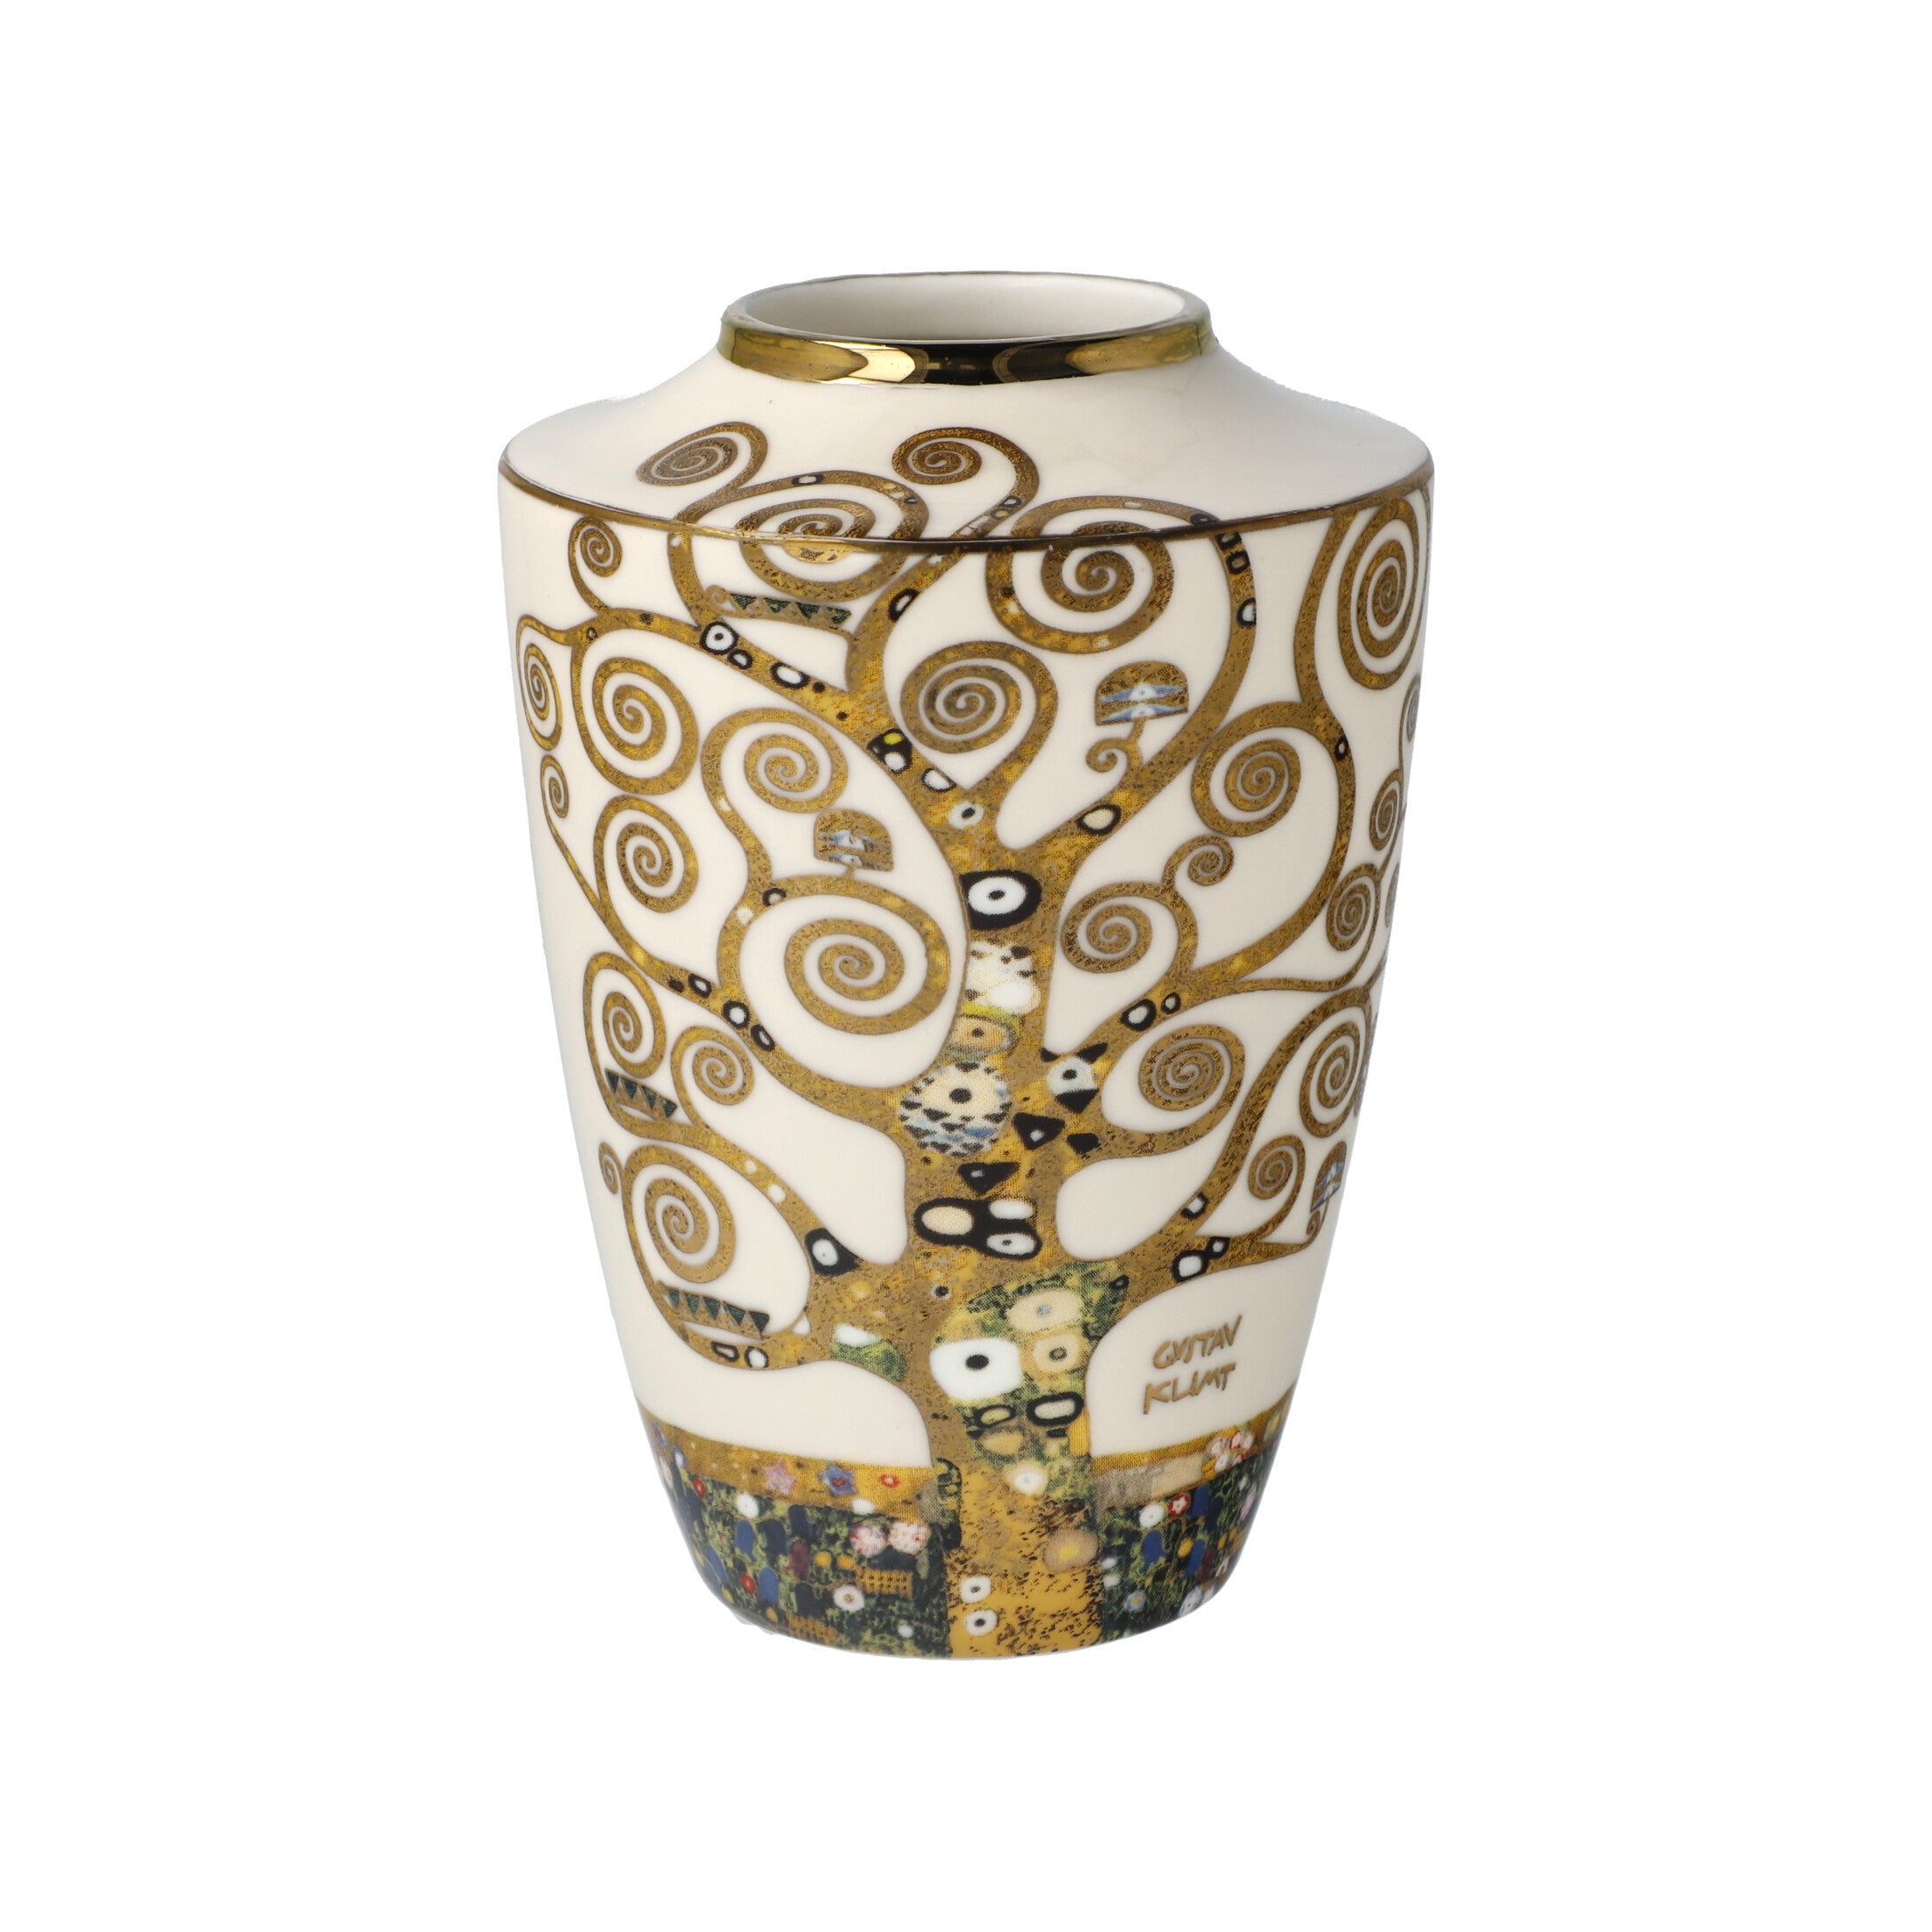 Goebel-Artis-Orbis-Vase-Der-Lebensbaum-v-Gustav-Klimt-berlindeluxe-gold-schwarz-weiß